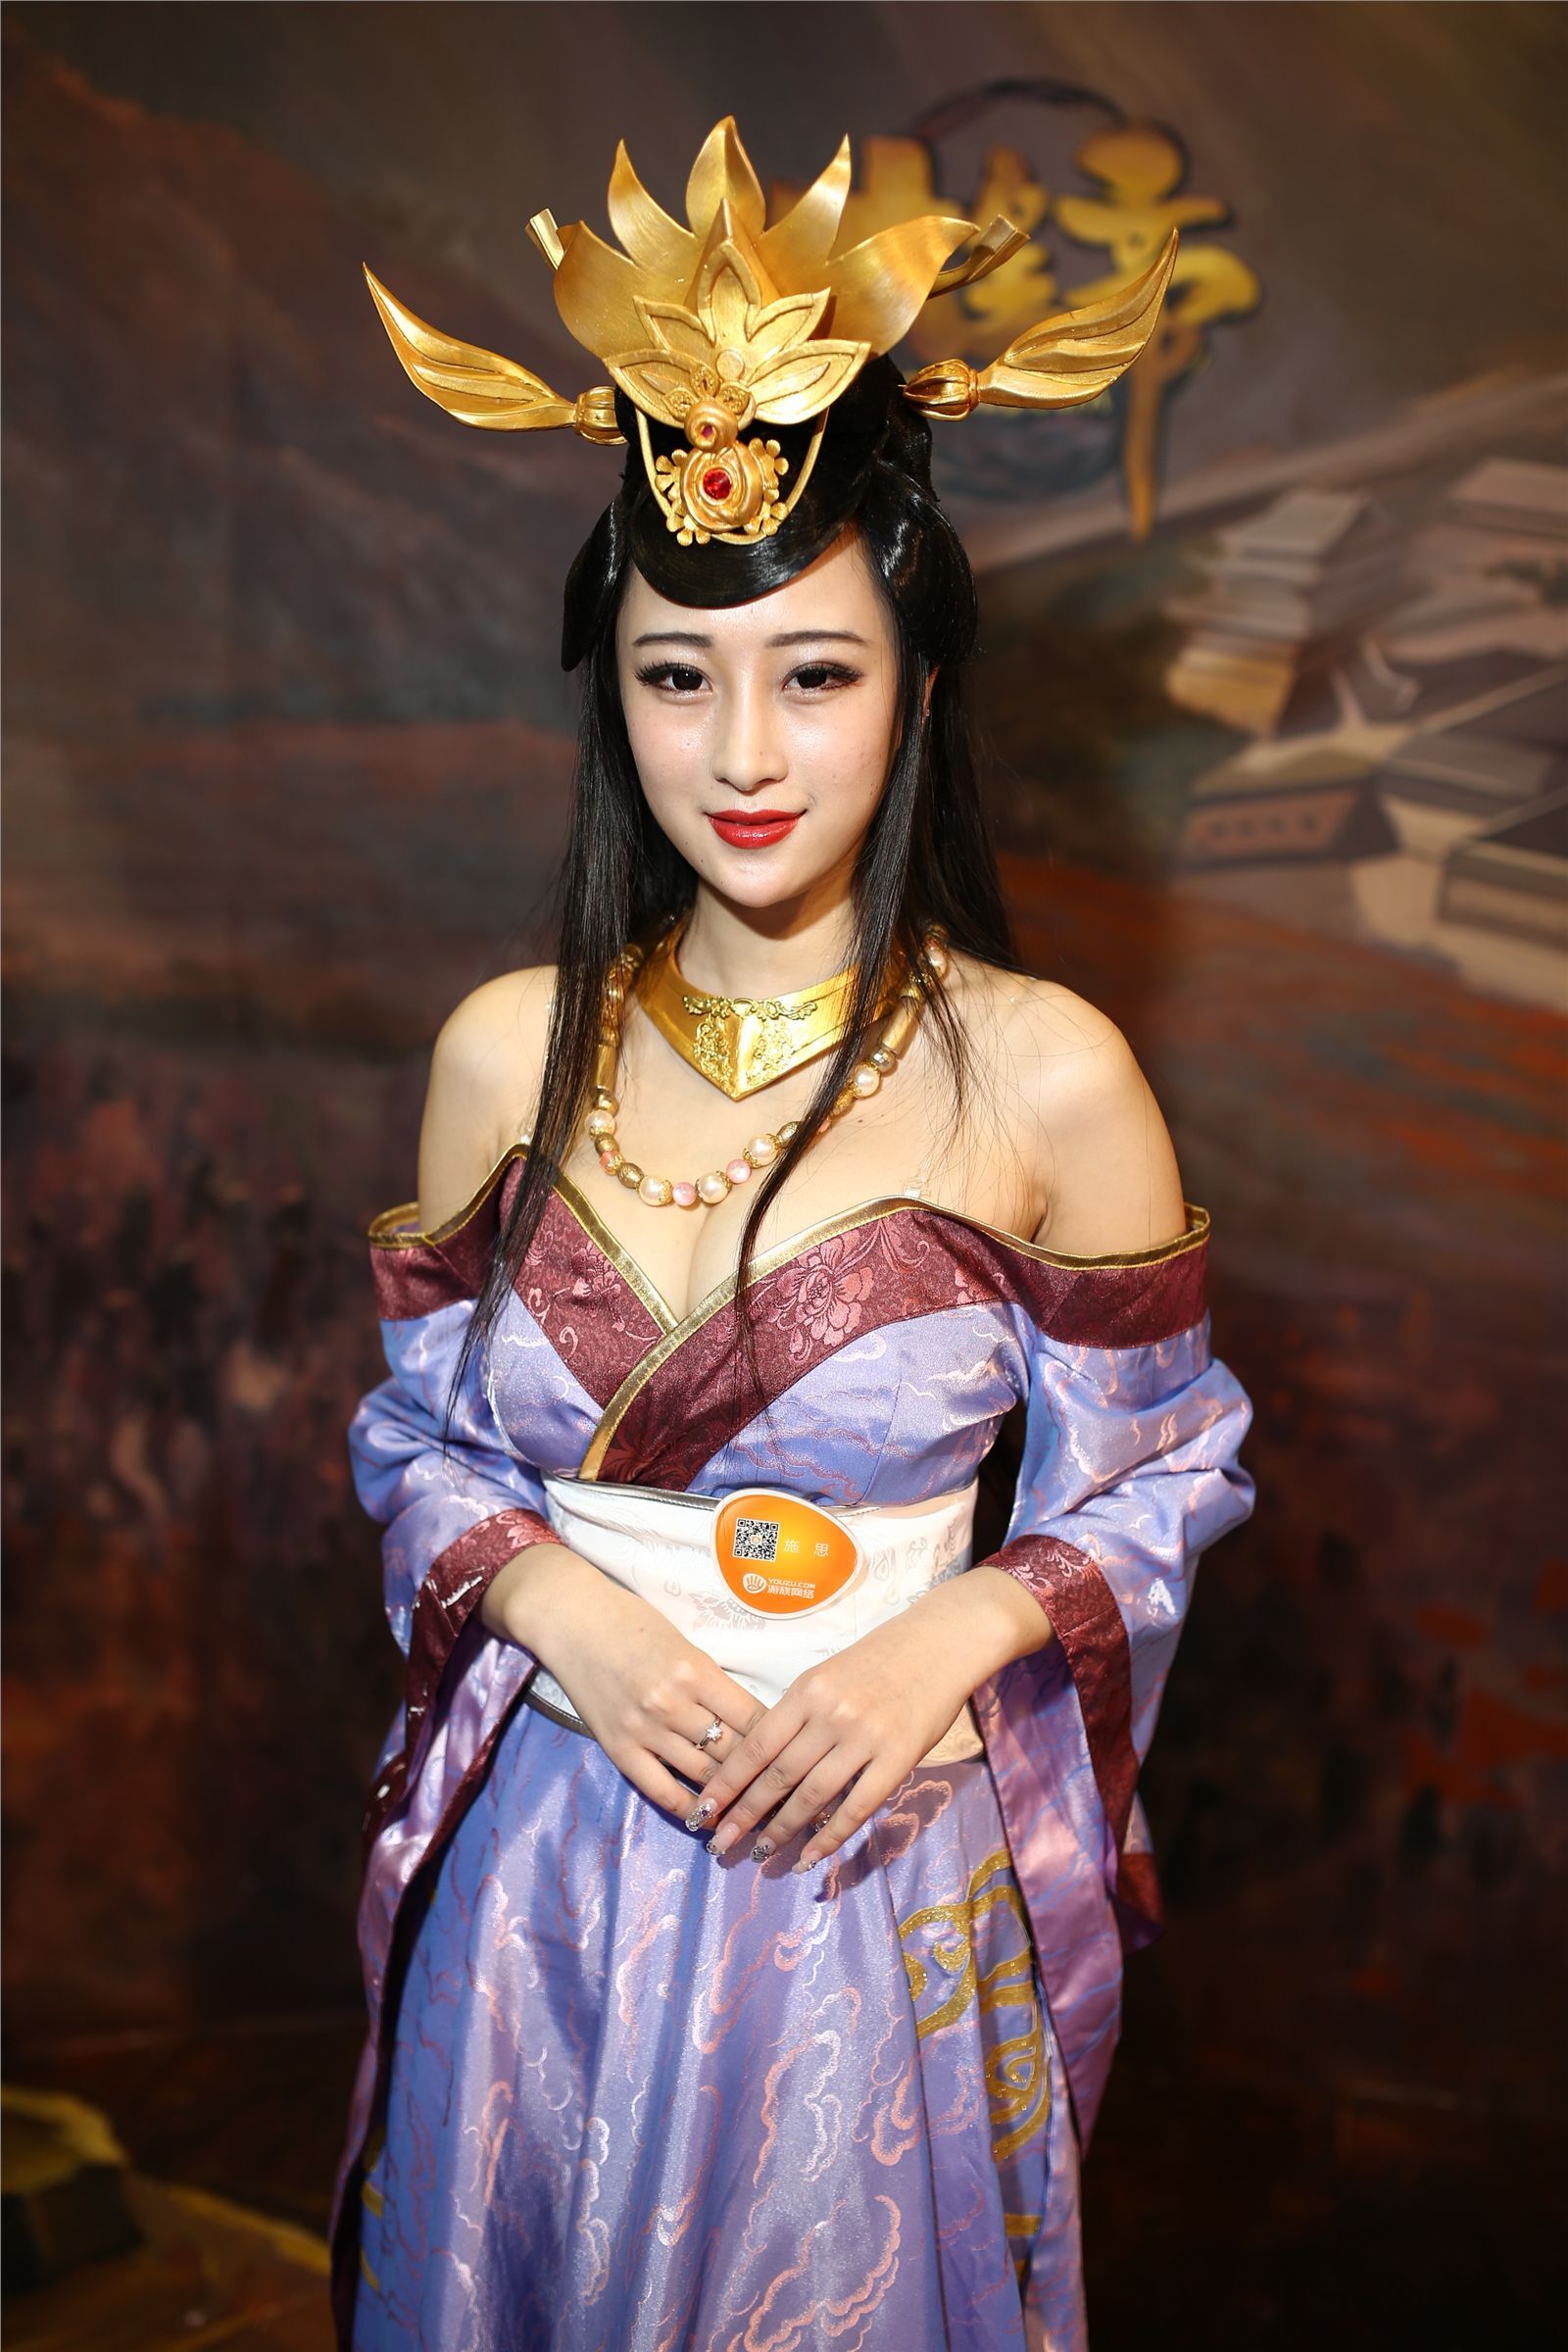 Chinajoy2014游族网络展台女神超清合集 2